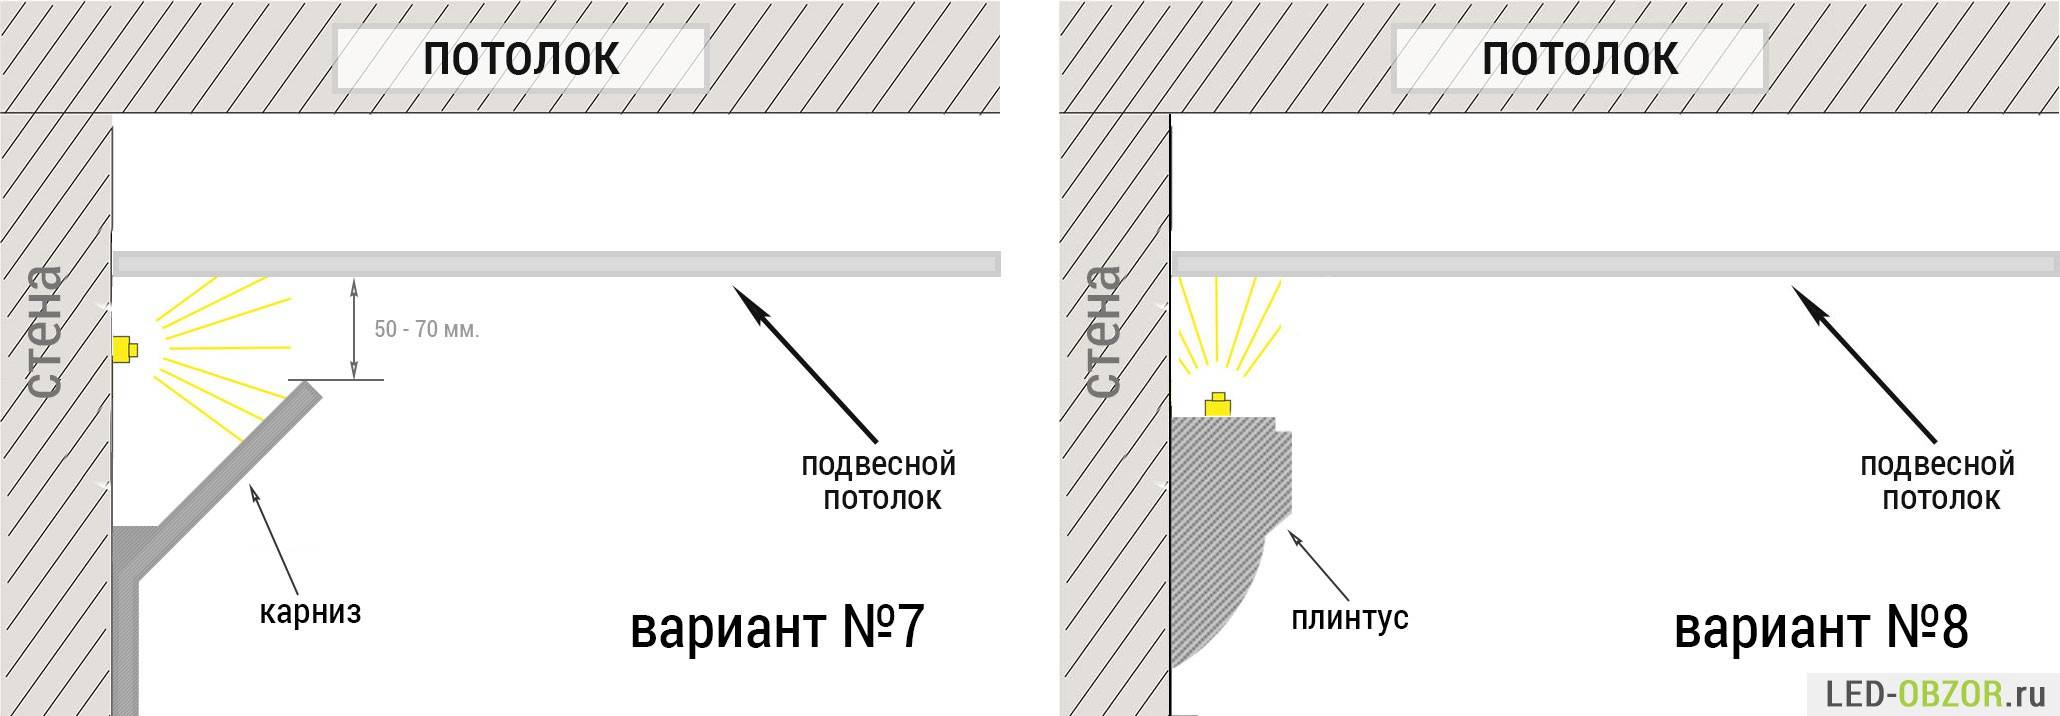 Потолочный плинтус с подсветкой: какая лучше для натяжных потолков по периметру